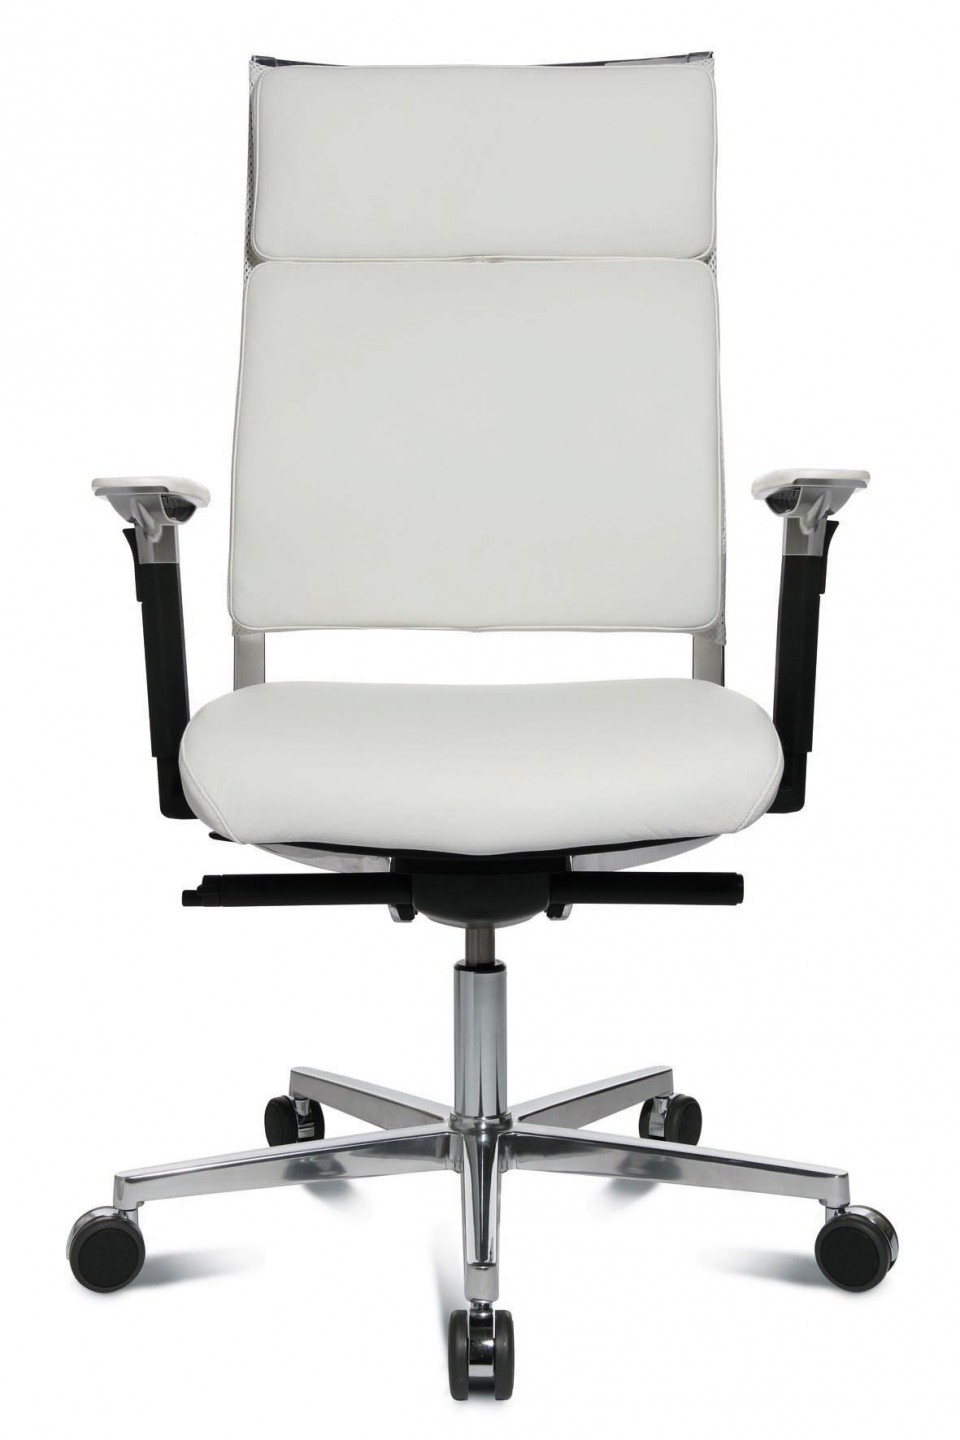 Fauteuil de bureau cuir Arty - Achat fauteuil bureau cuir - 899,00€